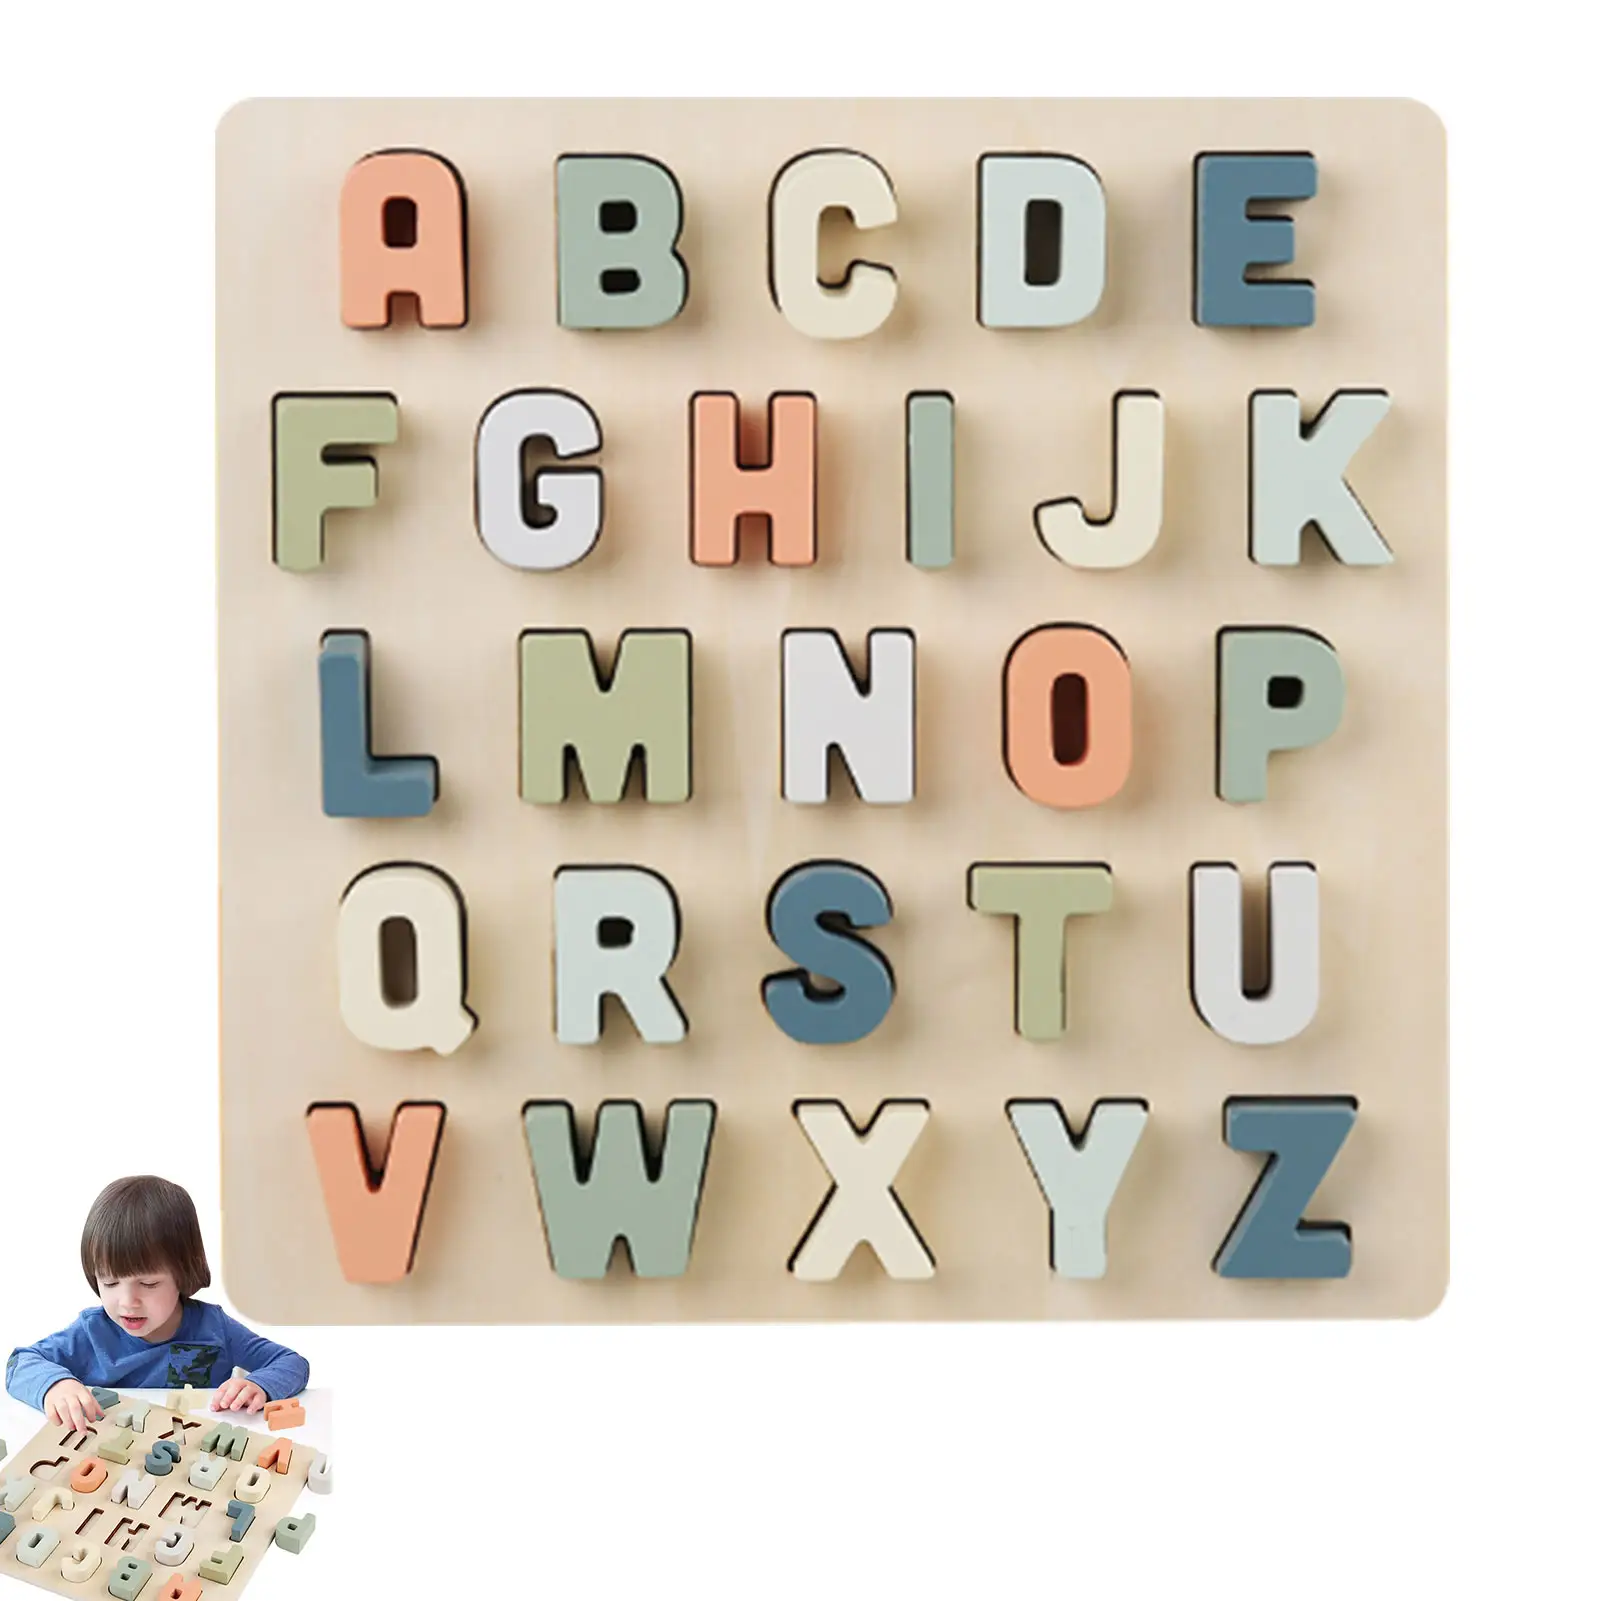 Büyük harf blokları 3D ahşap oyuncaklar Montessori erken eğitim ahşap yap-boz ABC blokları çocuklar için